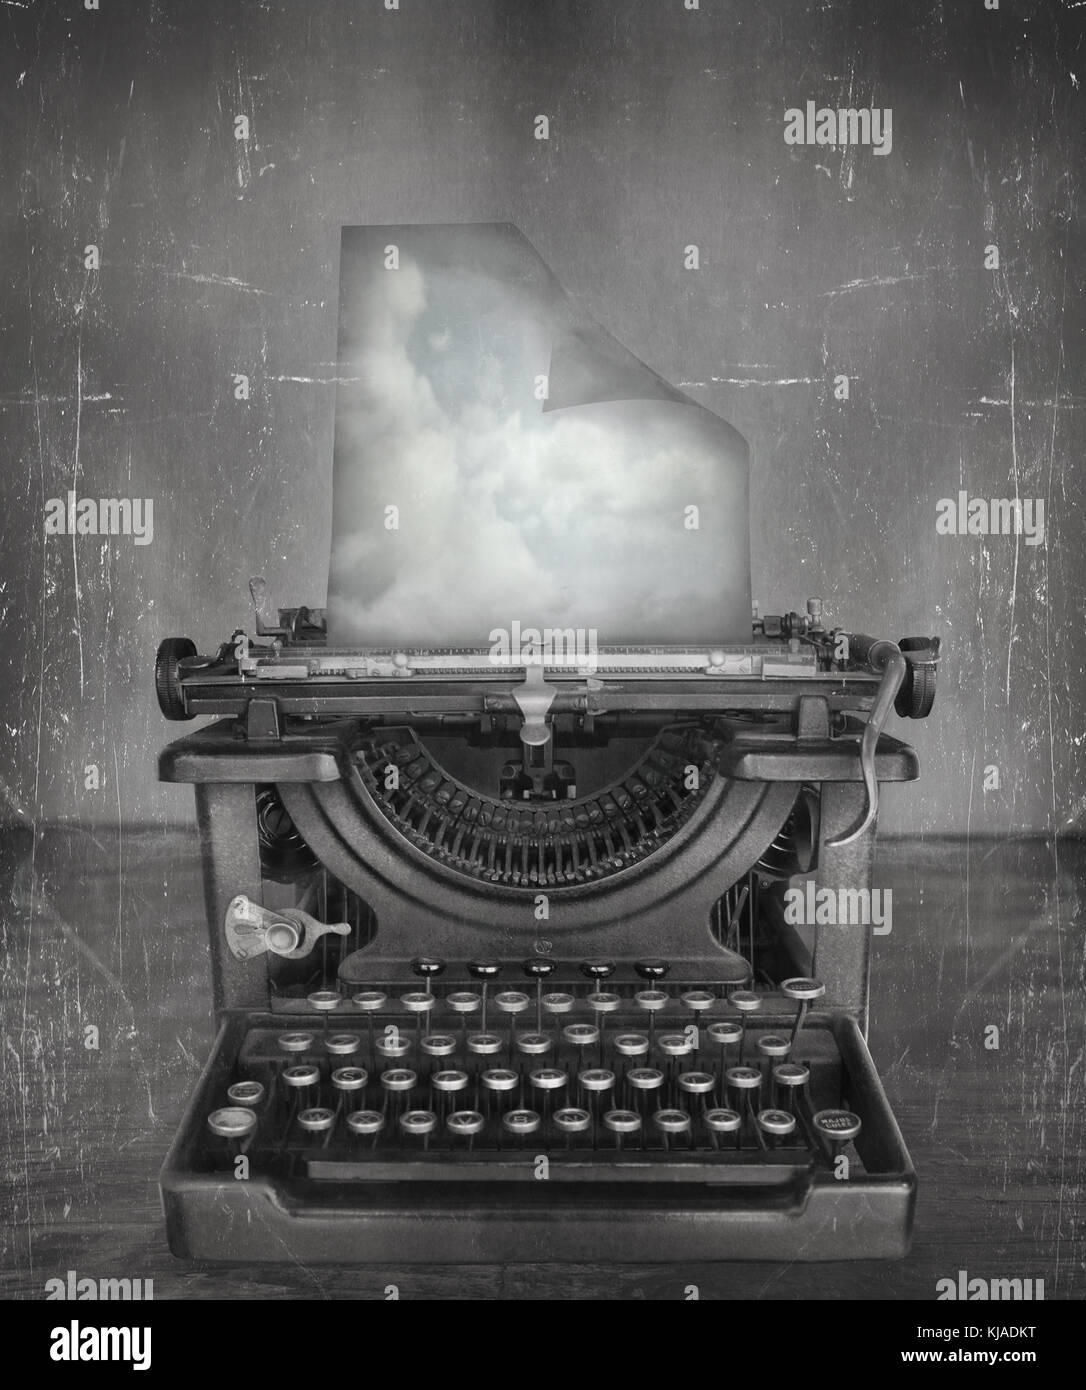 Imaginer surréaliste en noir et blanc d'une belle machine à écrire à l'ancienne classique avec un papier avec les nuages dans un style vintage Banque D'Images